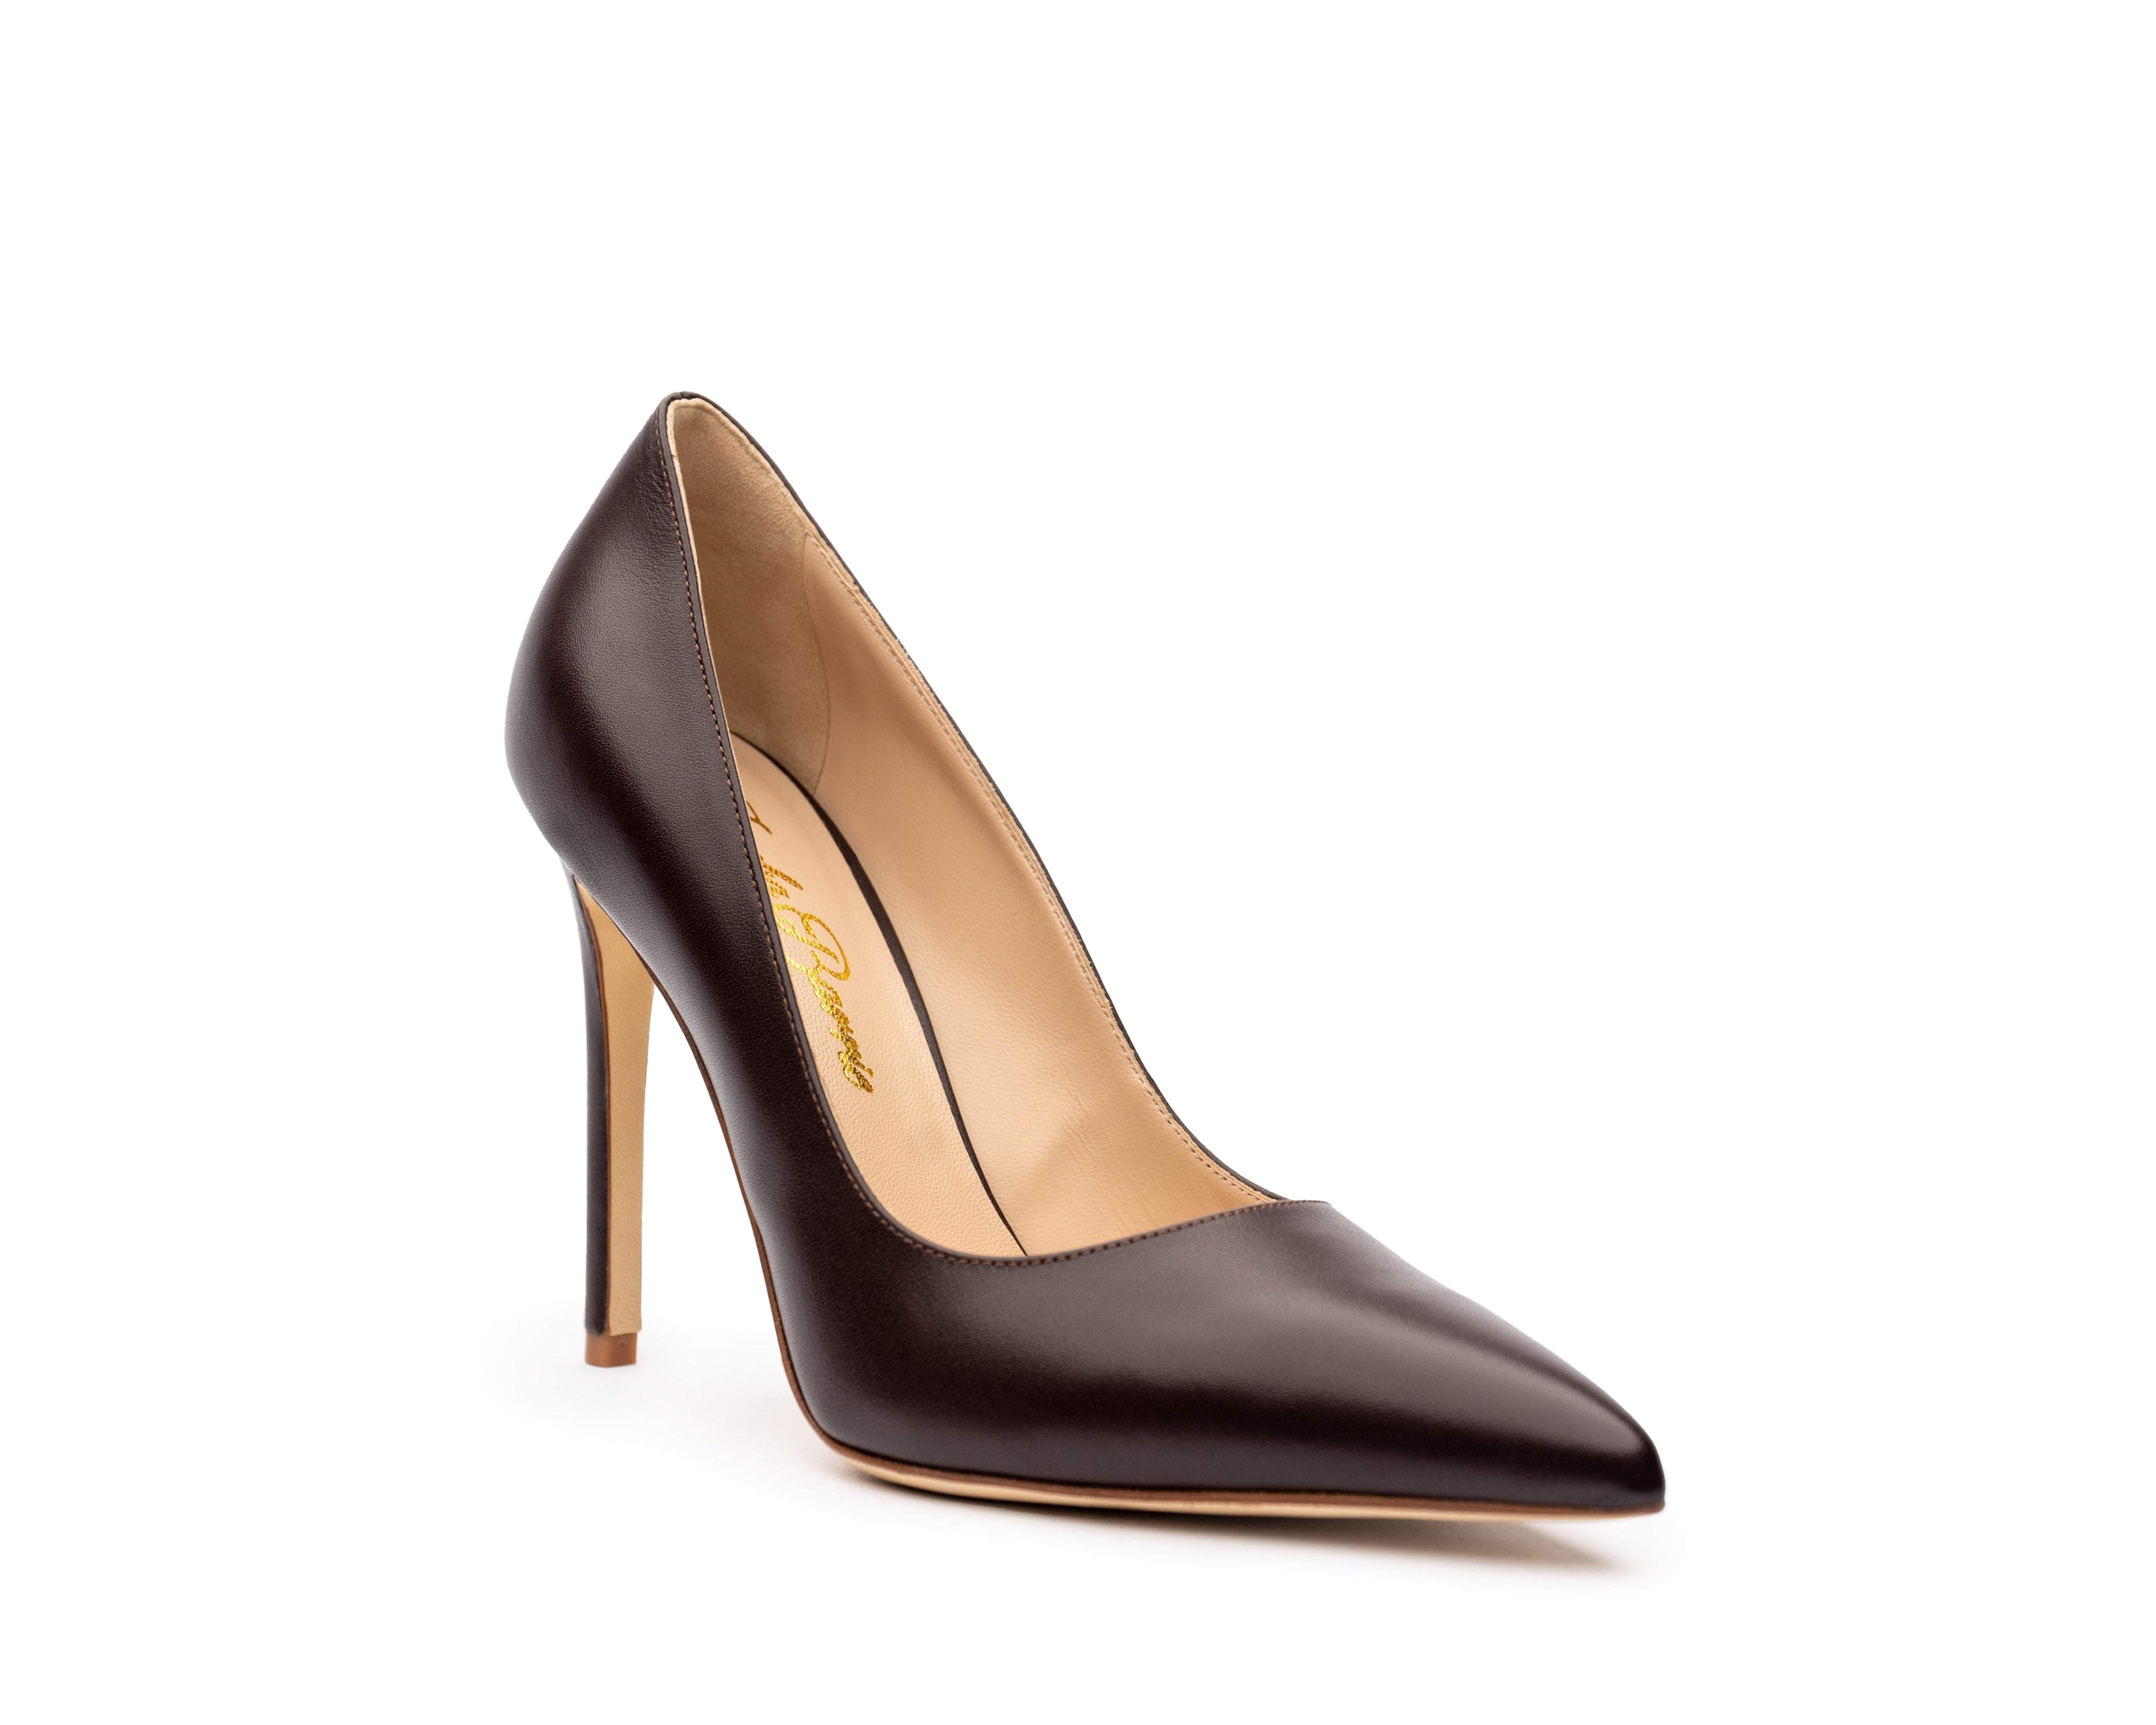 Women's nude pumps. Brown pumps. Cacao Truffle high heels. Comfortable heels. Business High Heels. Office Pumps. Comfortable office heels. Italian leather.